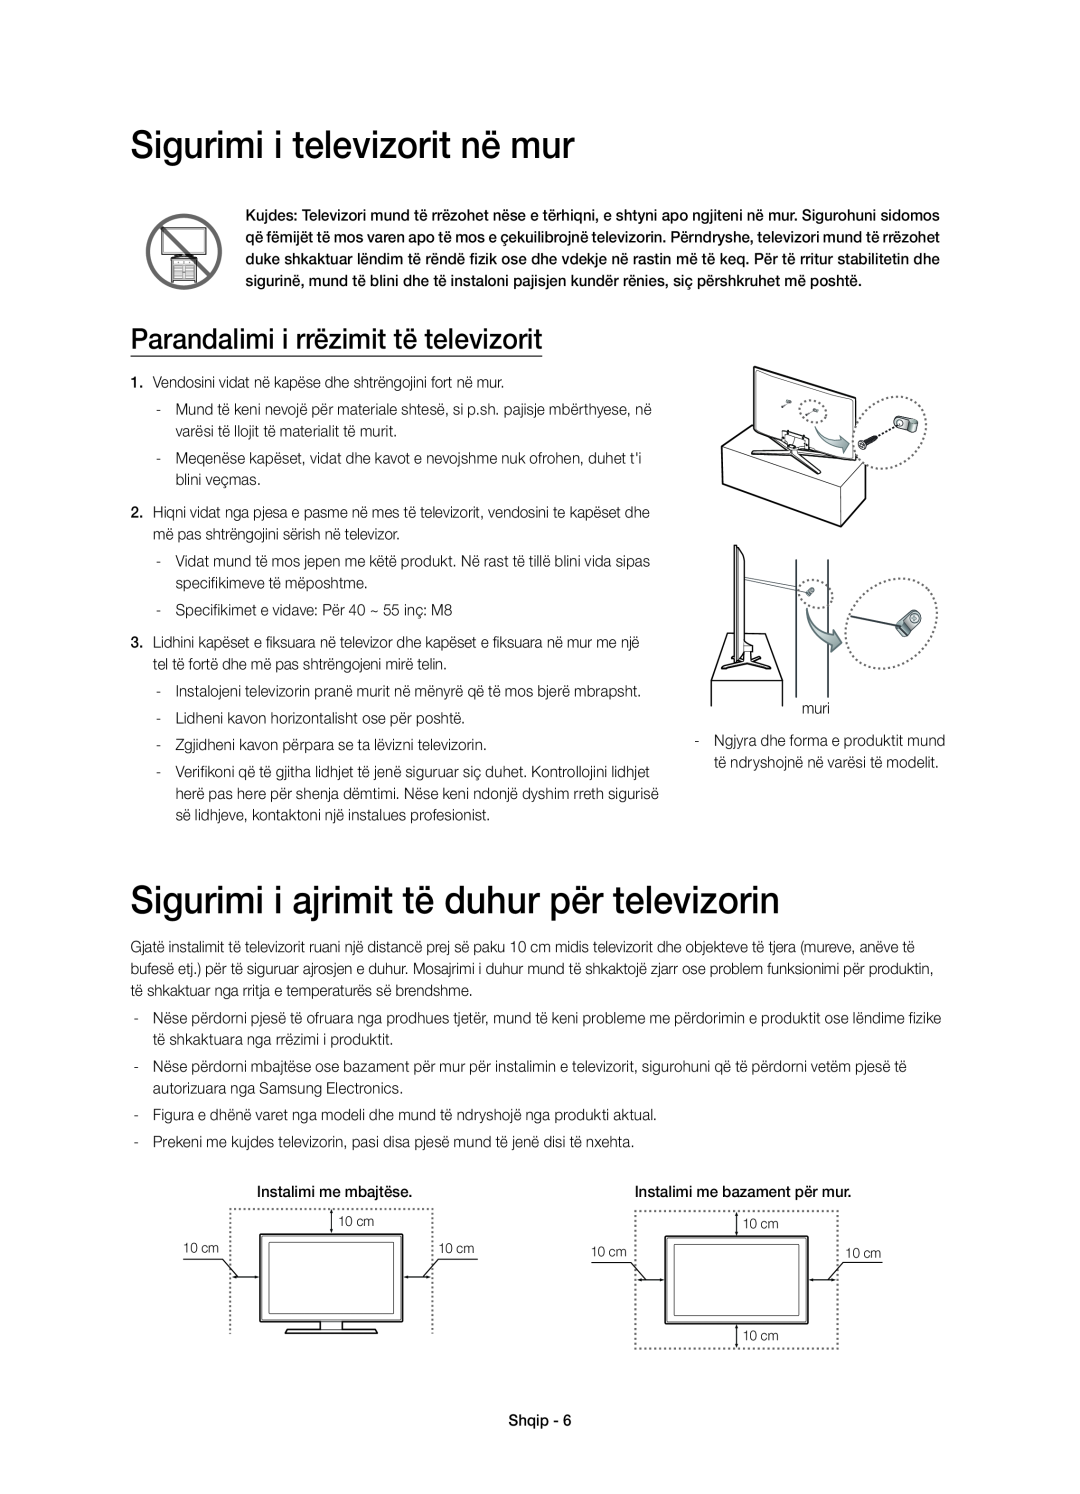 Samsung UE55H6700SLXXN, UE55H6700SLXXH manual Sigurimi i televizorit në mur, Sigurimi i ajrimit të duhur për televizorin 